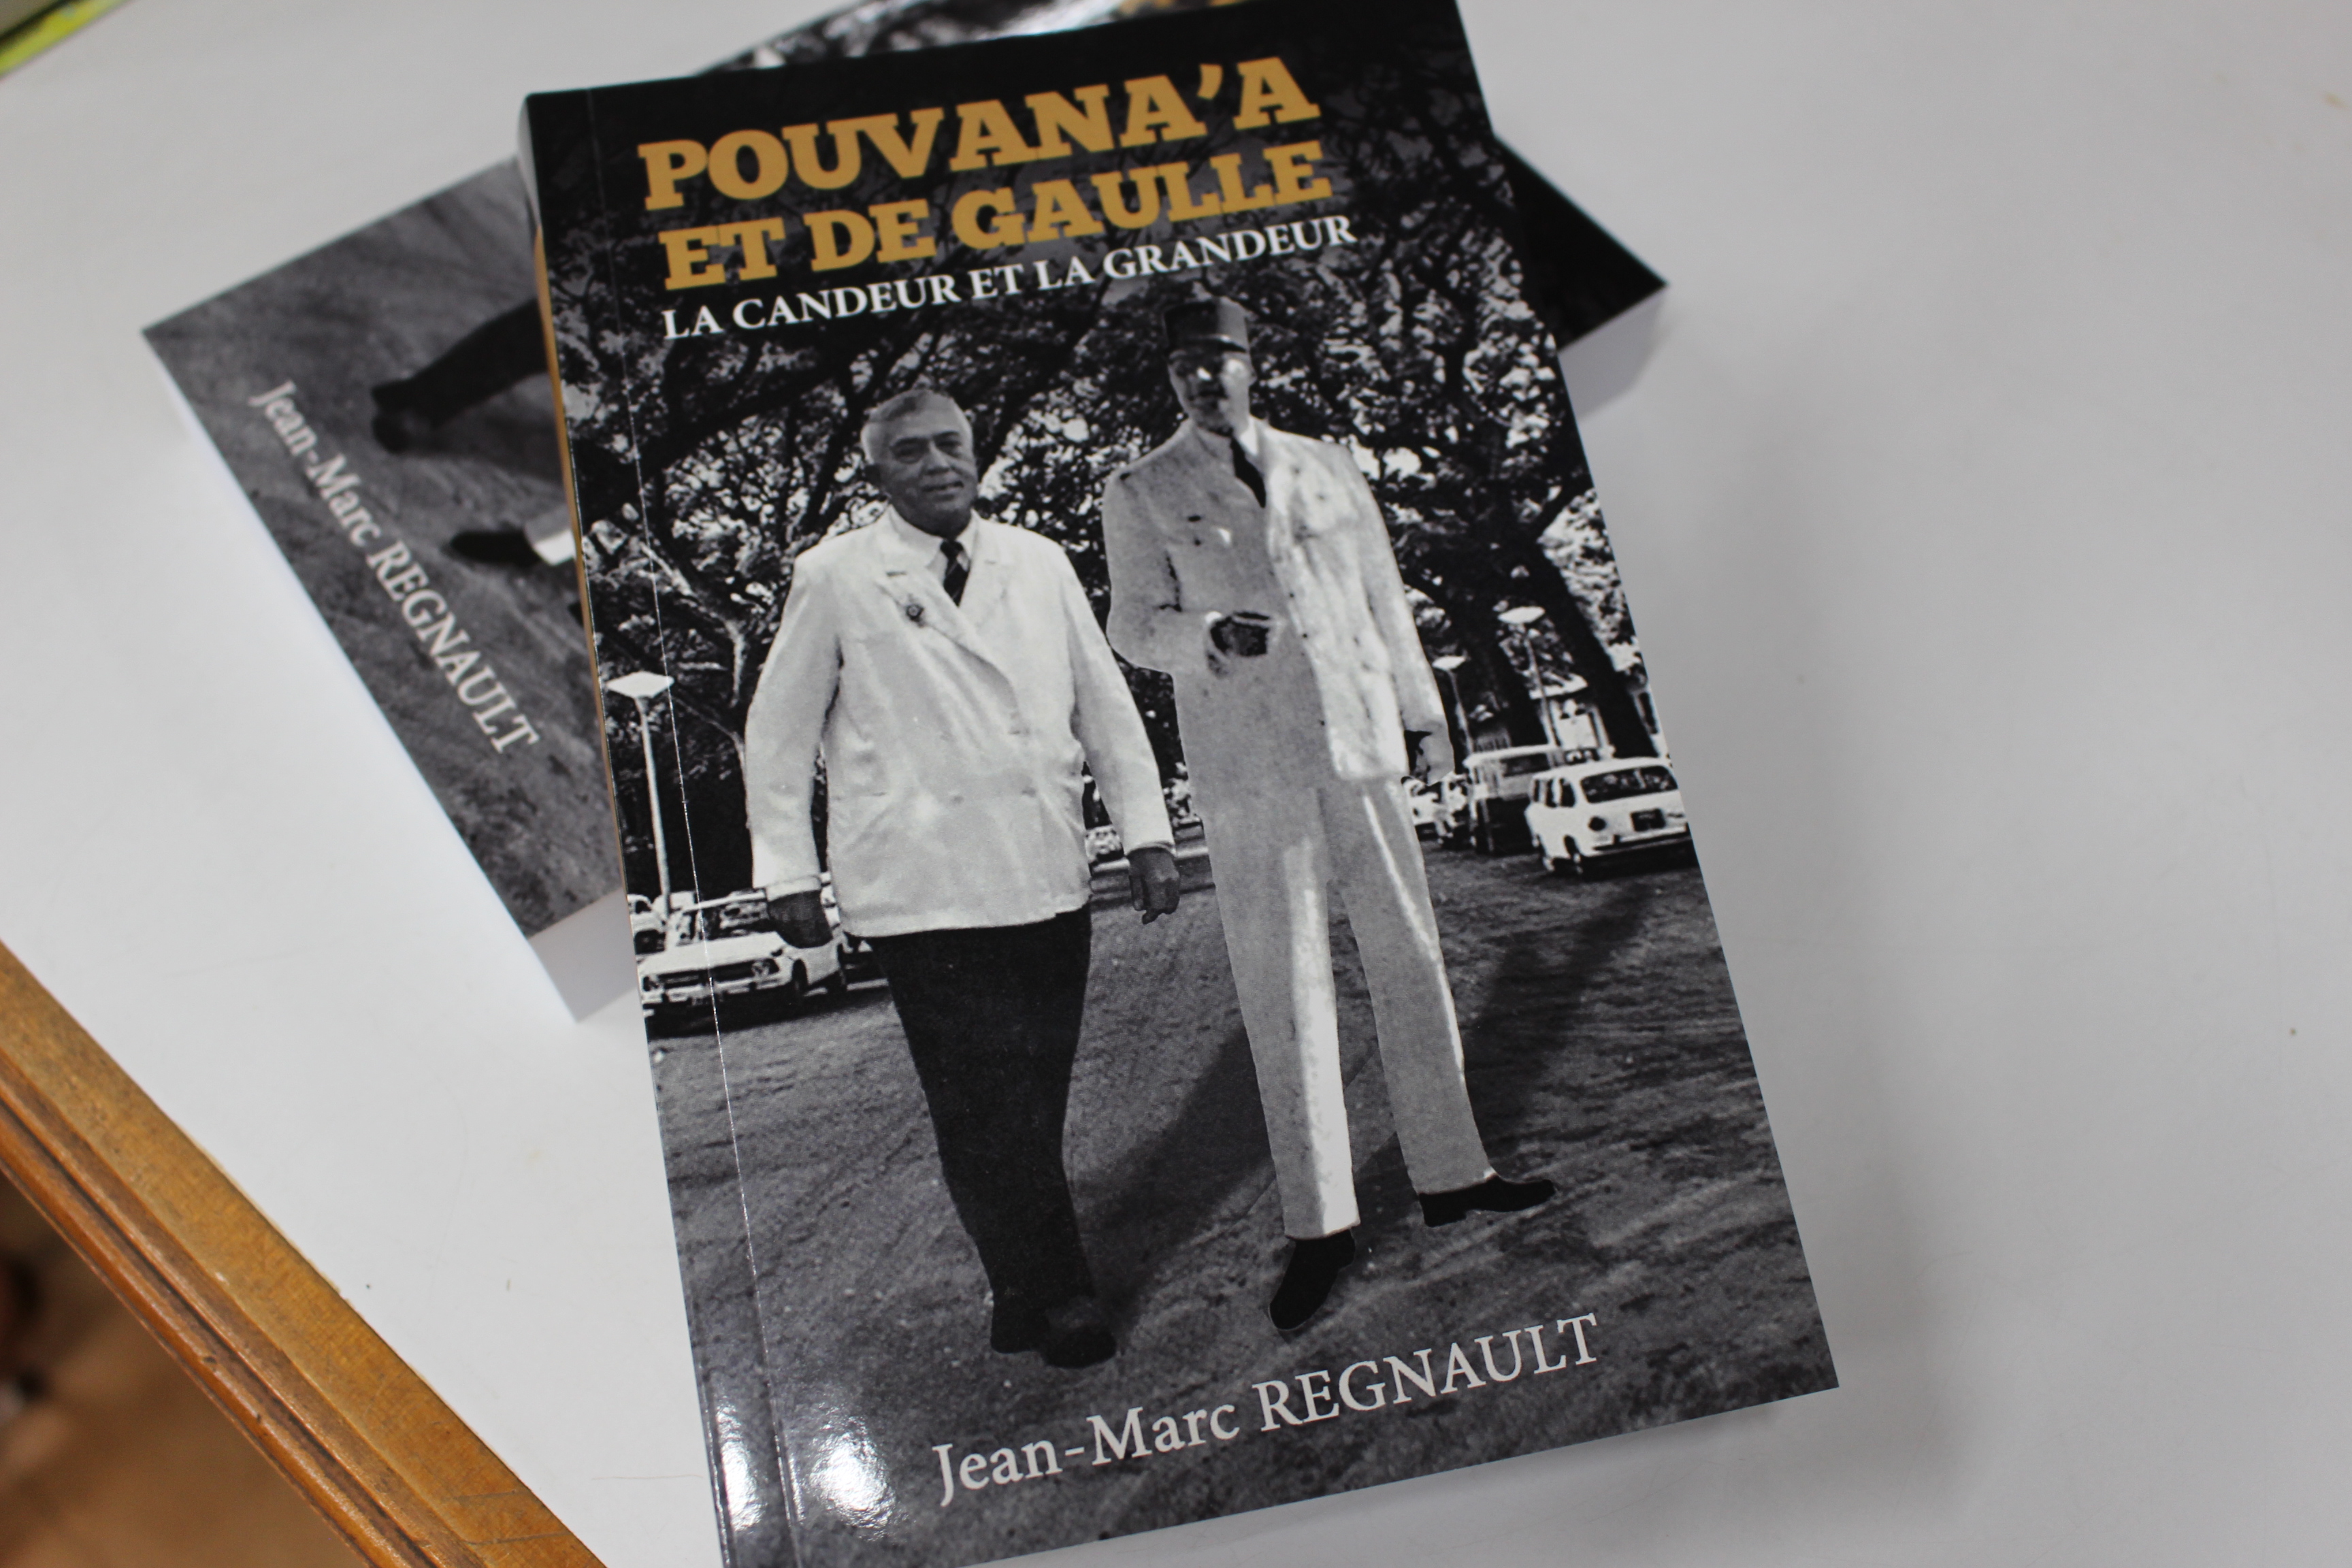 Jean-Marc Regnault signe "Pouvana’a et de Gaulle, la candeur et la grandeur"